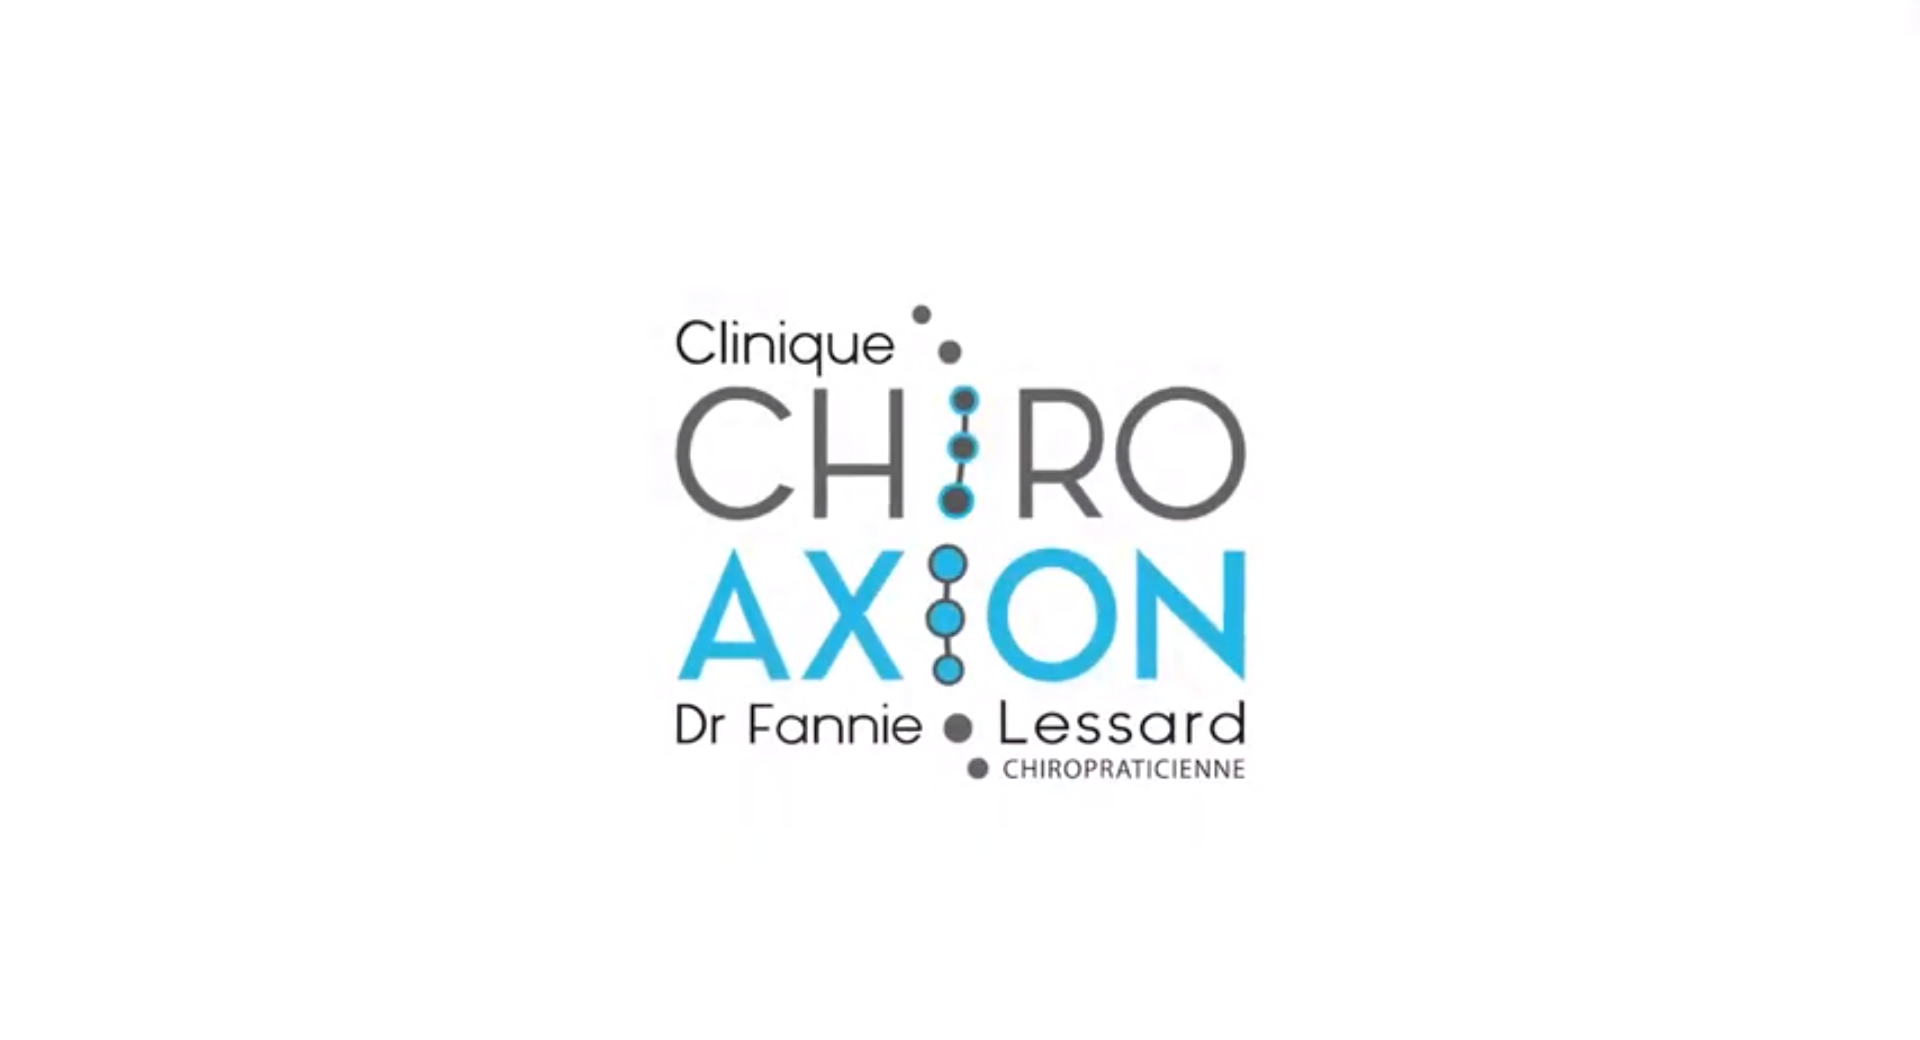 Chiro Axion, Chiroaxion.com